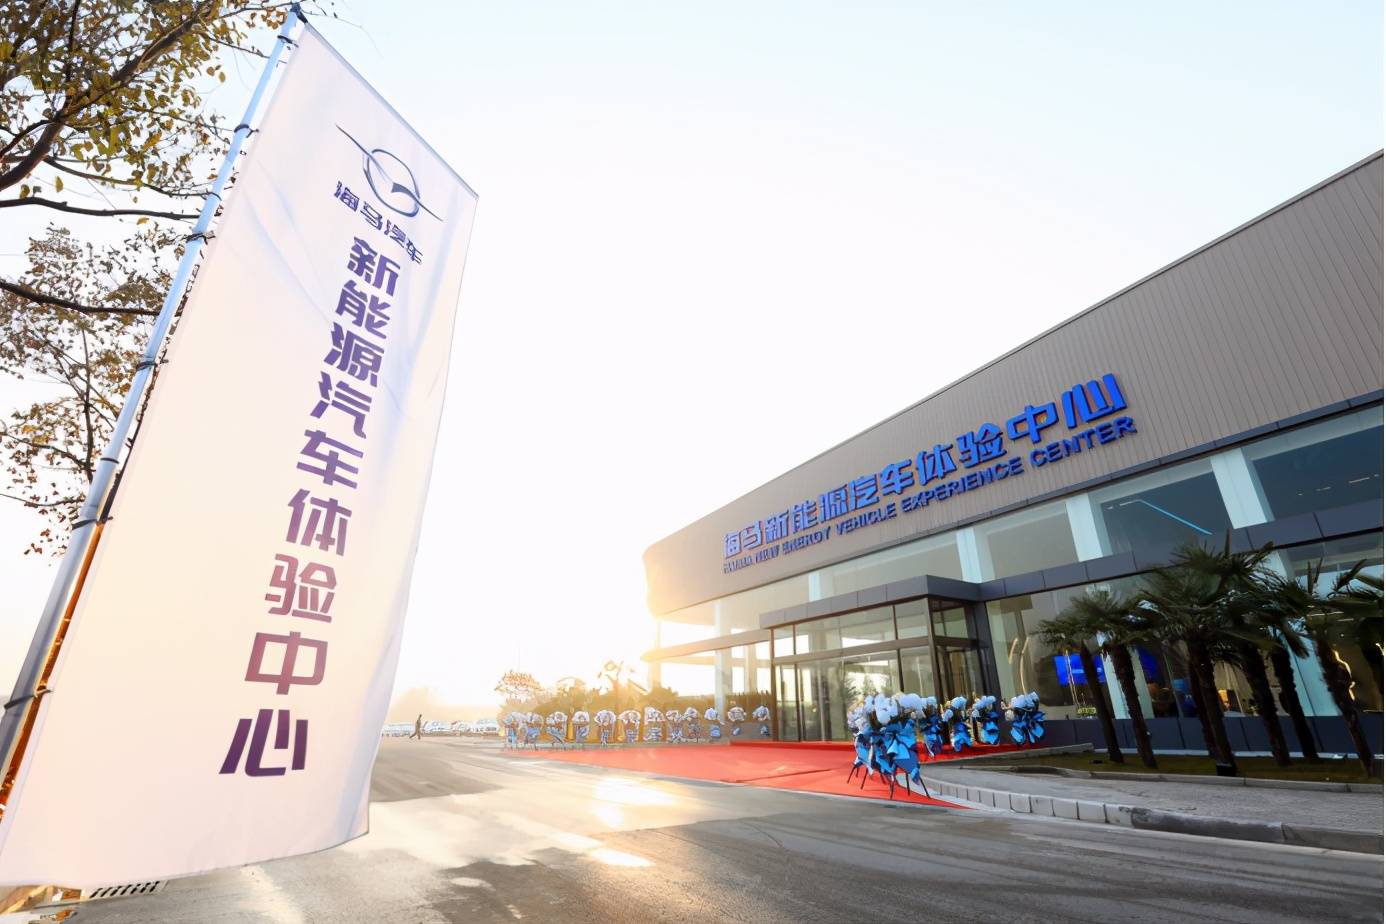 海马汽车5g战略合作伙伴,郑州移动经开分公司总经理赵红涛共同为体验